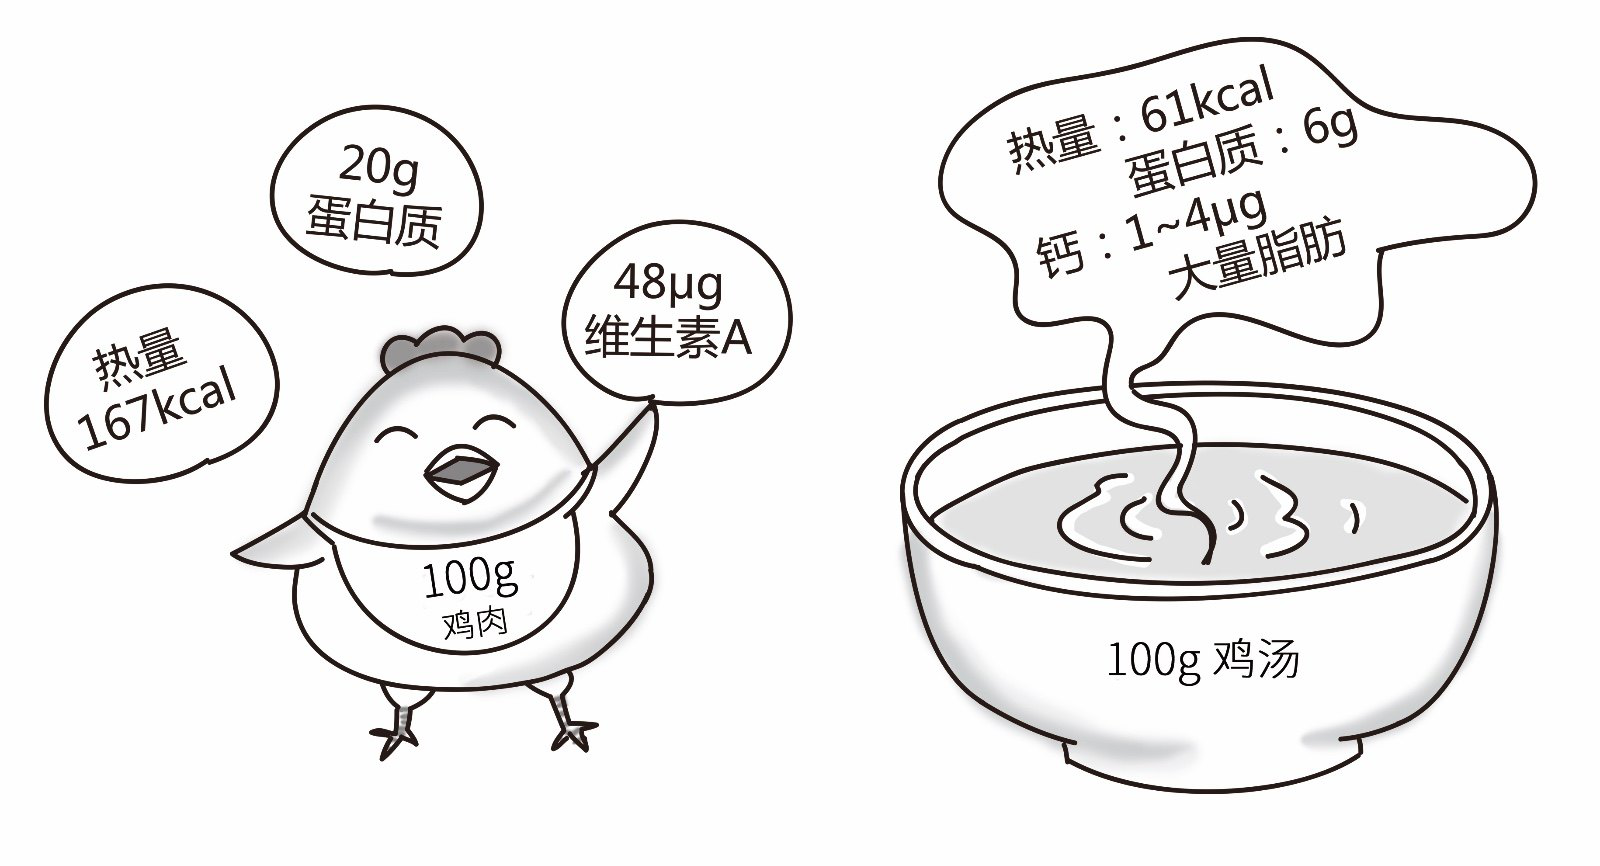 喝鸡汤能补充营养不足吗?